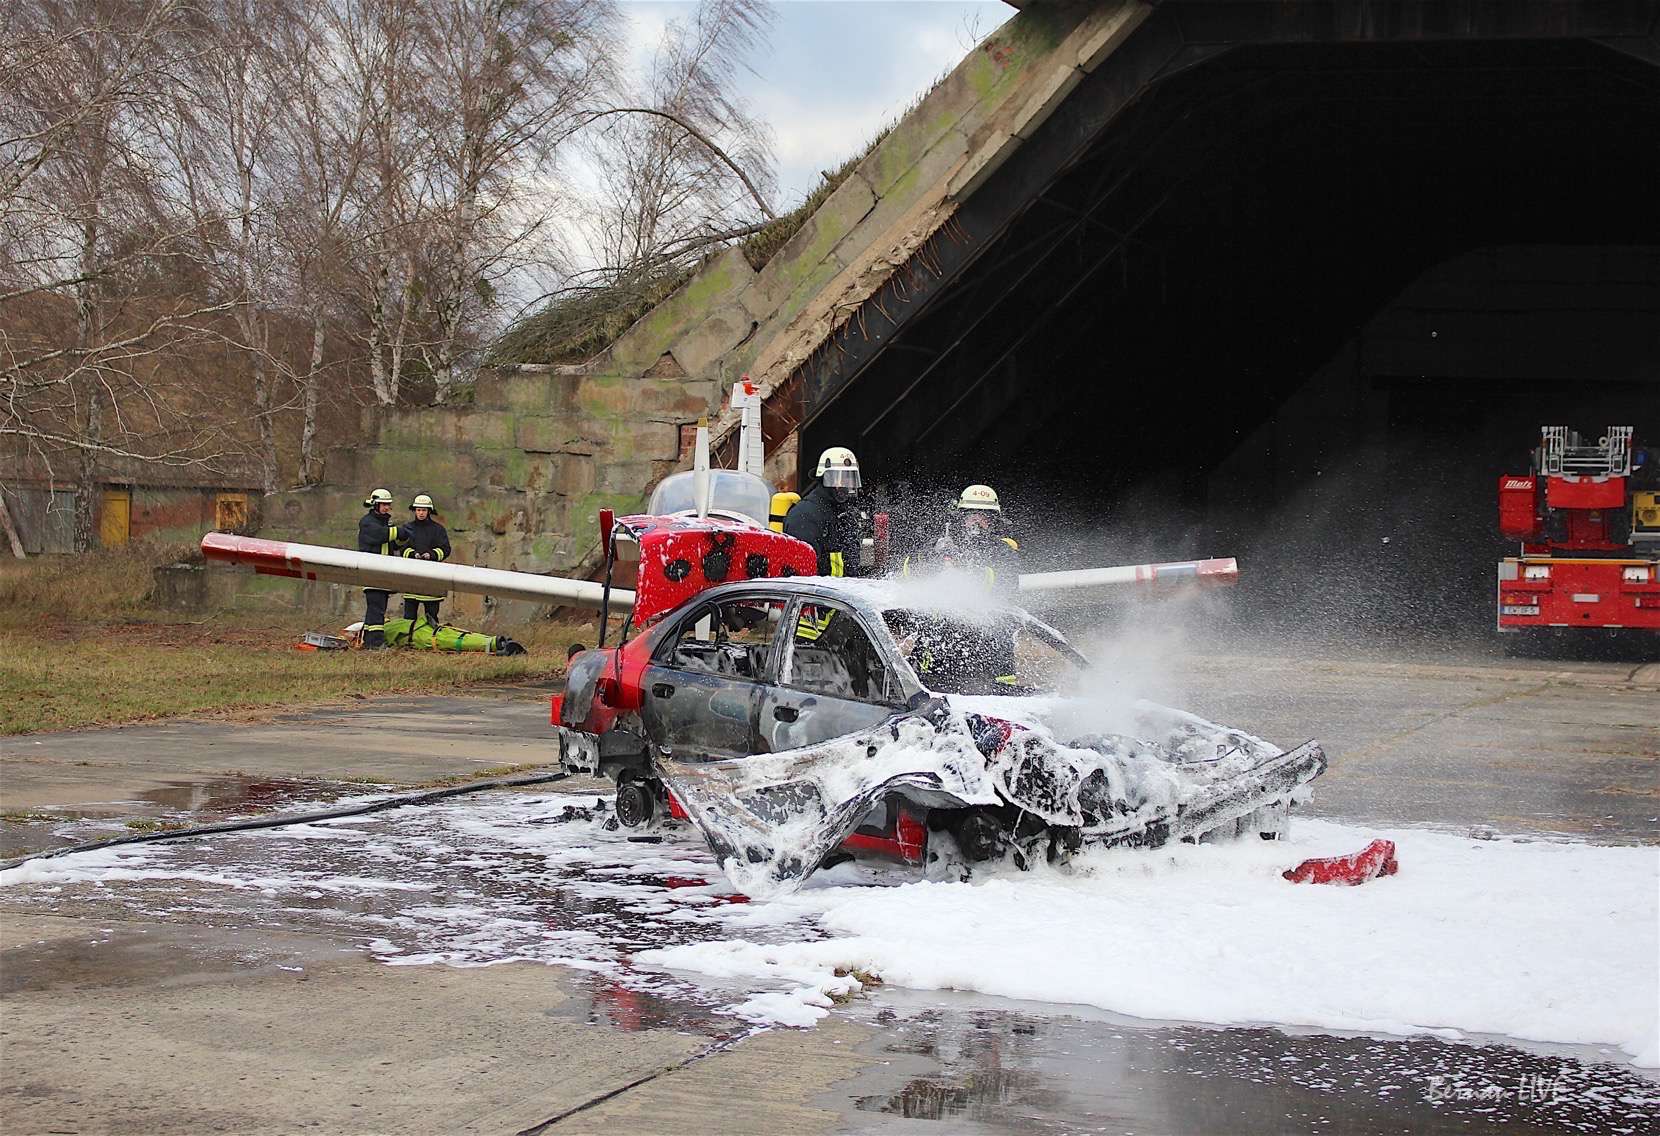 Feuerwehr Eberswalde: "Flugzeugunfall - Zusammenstoss Flugzeug mit PKW - Feuer"